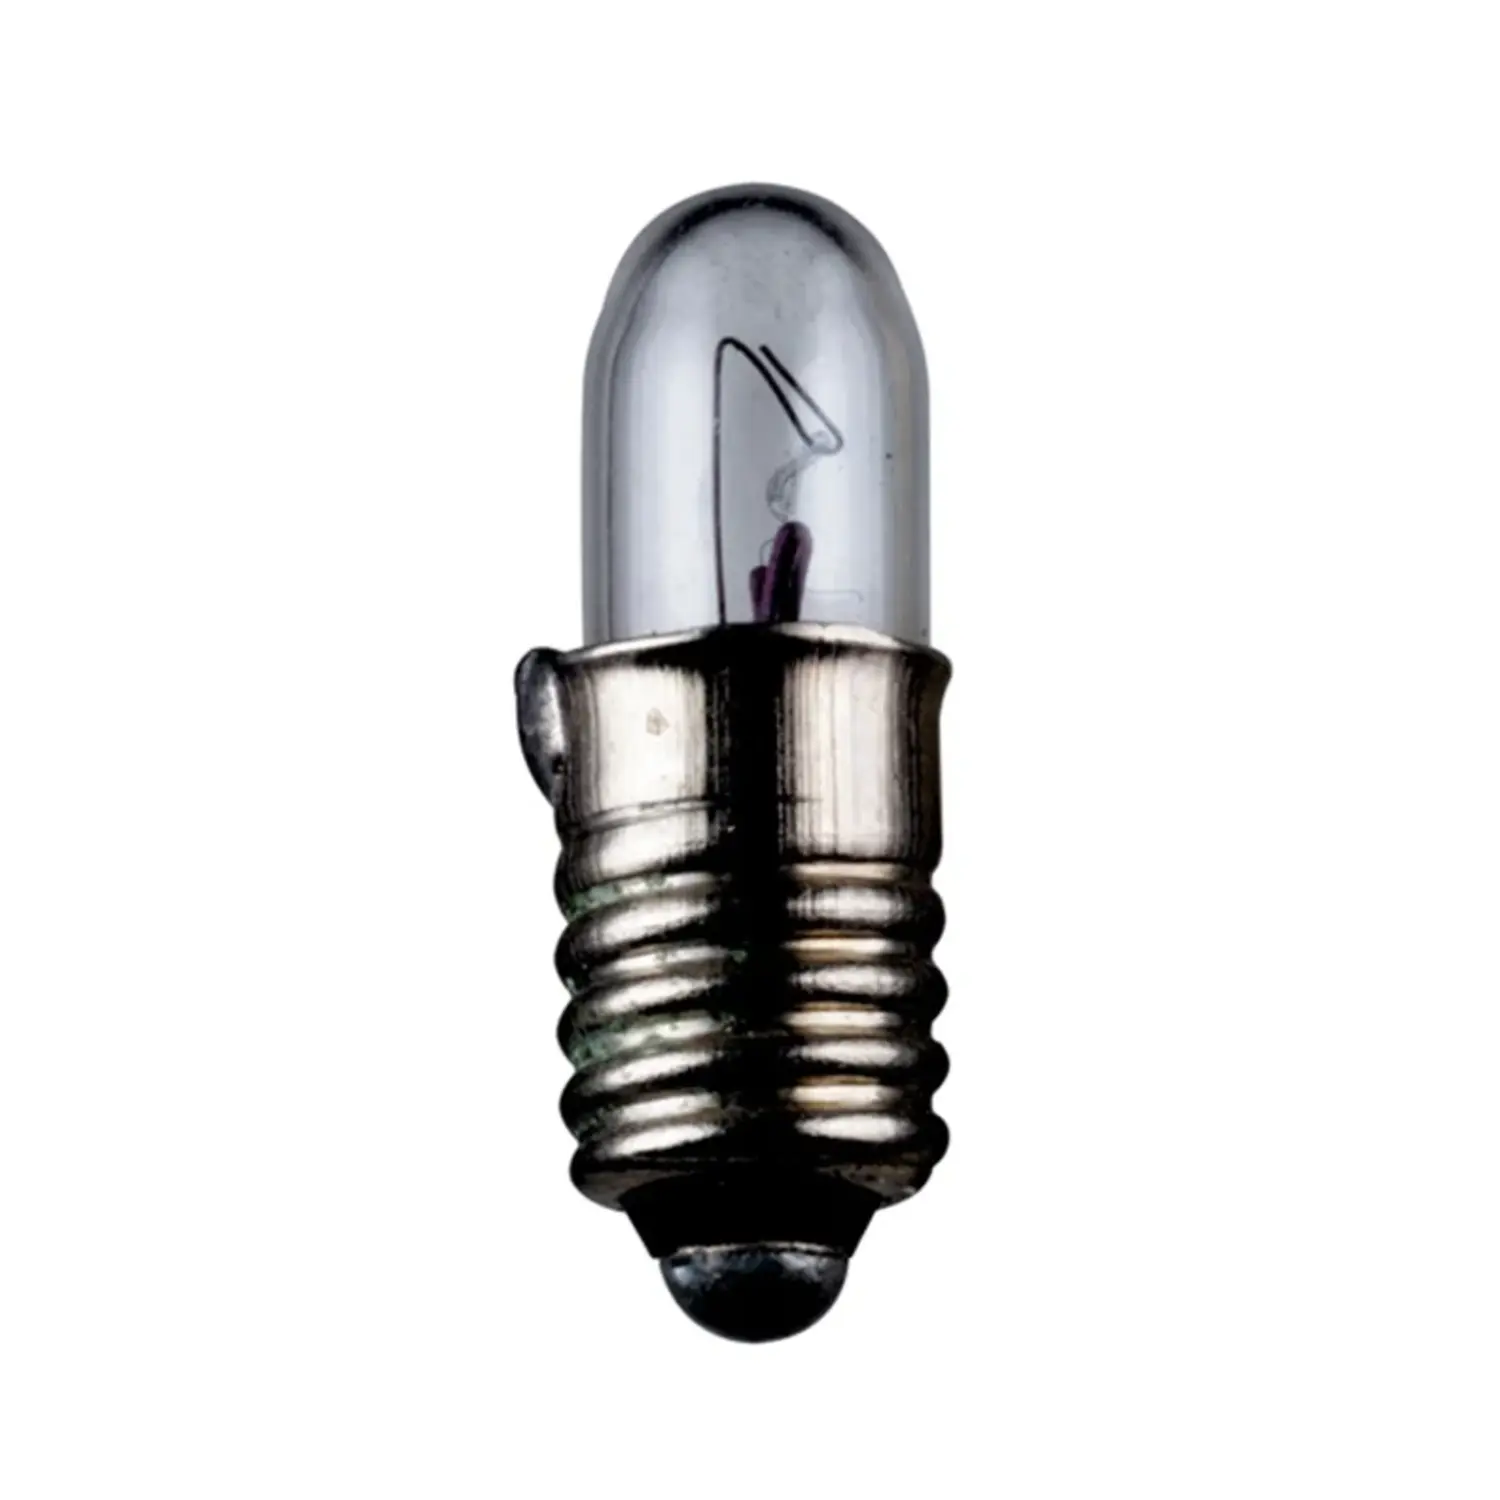 immagine lampadina in miniatura modellismo treno presepe natale e5.5 0,56 watt 14 volt